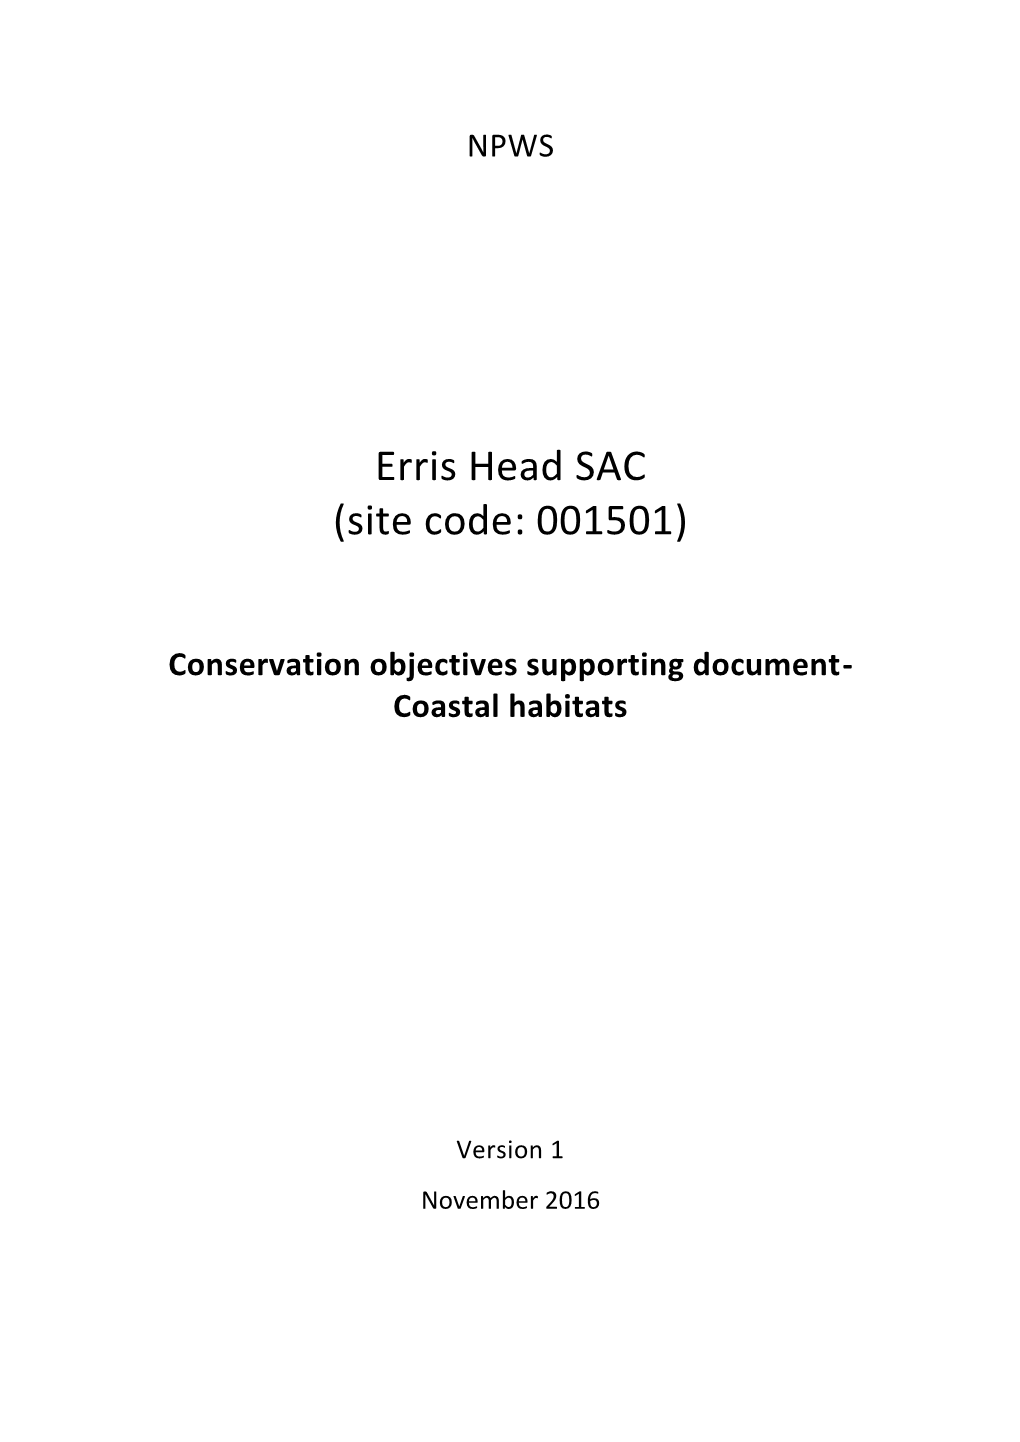 Erris Head SAC (Site Code: 001501)